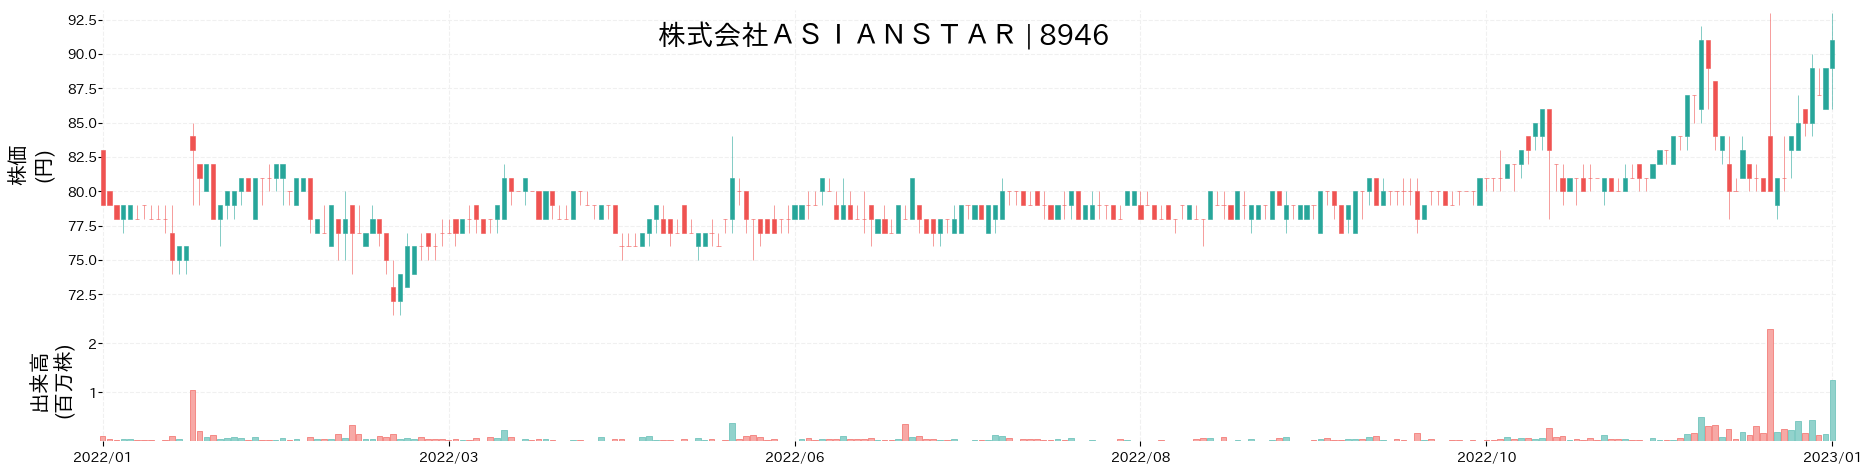 ASIAN STARの株価推移(2022)